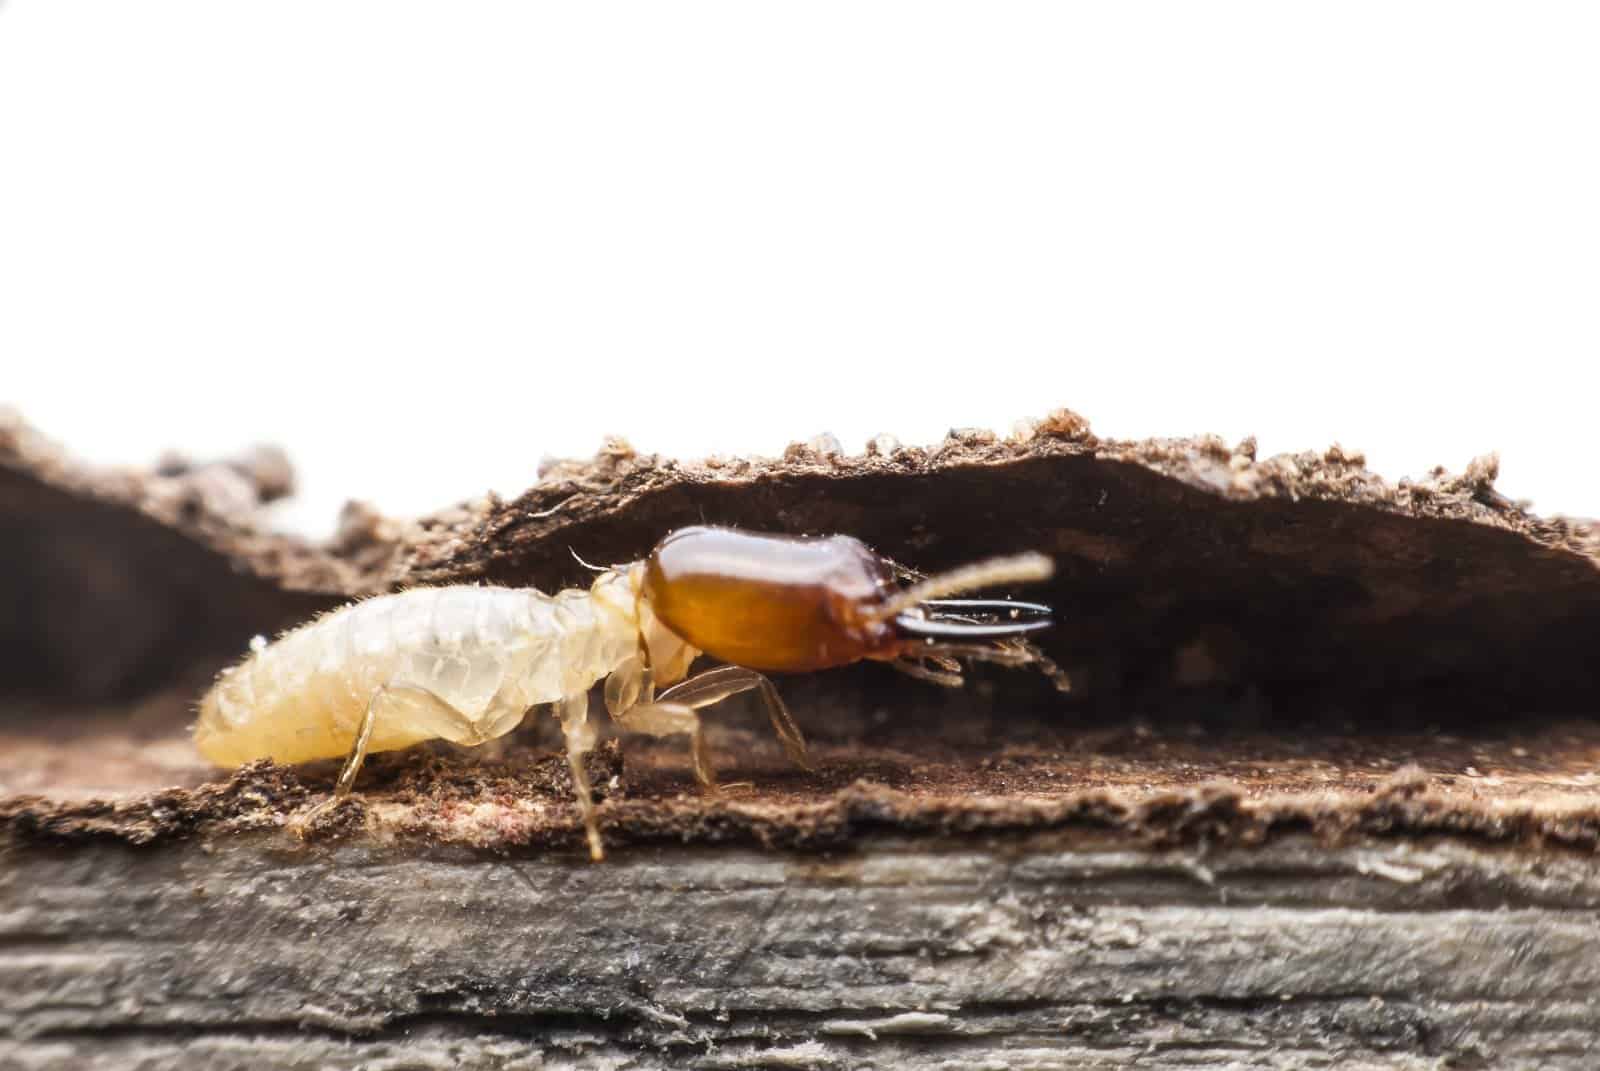 หมดปัญหาเรื่องปลวกระยะยาว ตายถึงรัง ด้วยการกำจัดปลวกระบบเหยื่อ | กำจัดปลวก  กำจัดแมลง ฉีดปลวก กำจัดหนู ทำความสะอาดครบวงจร